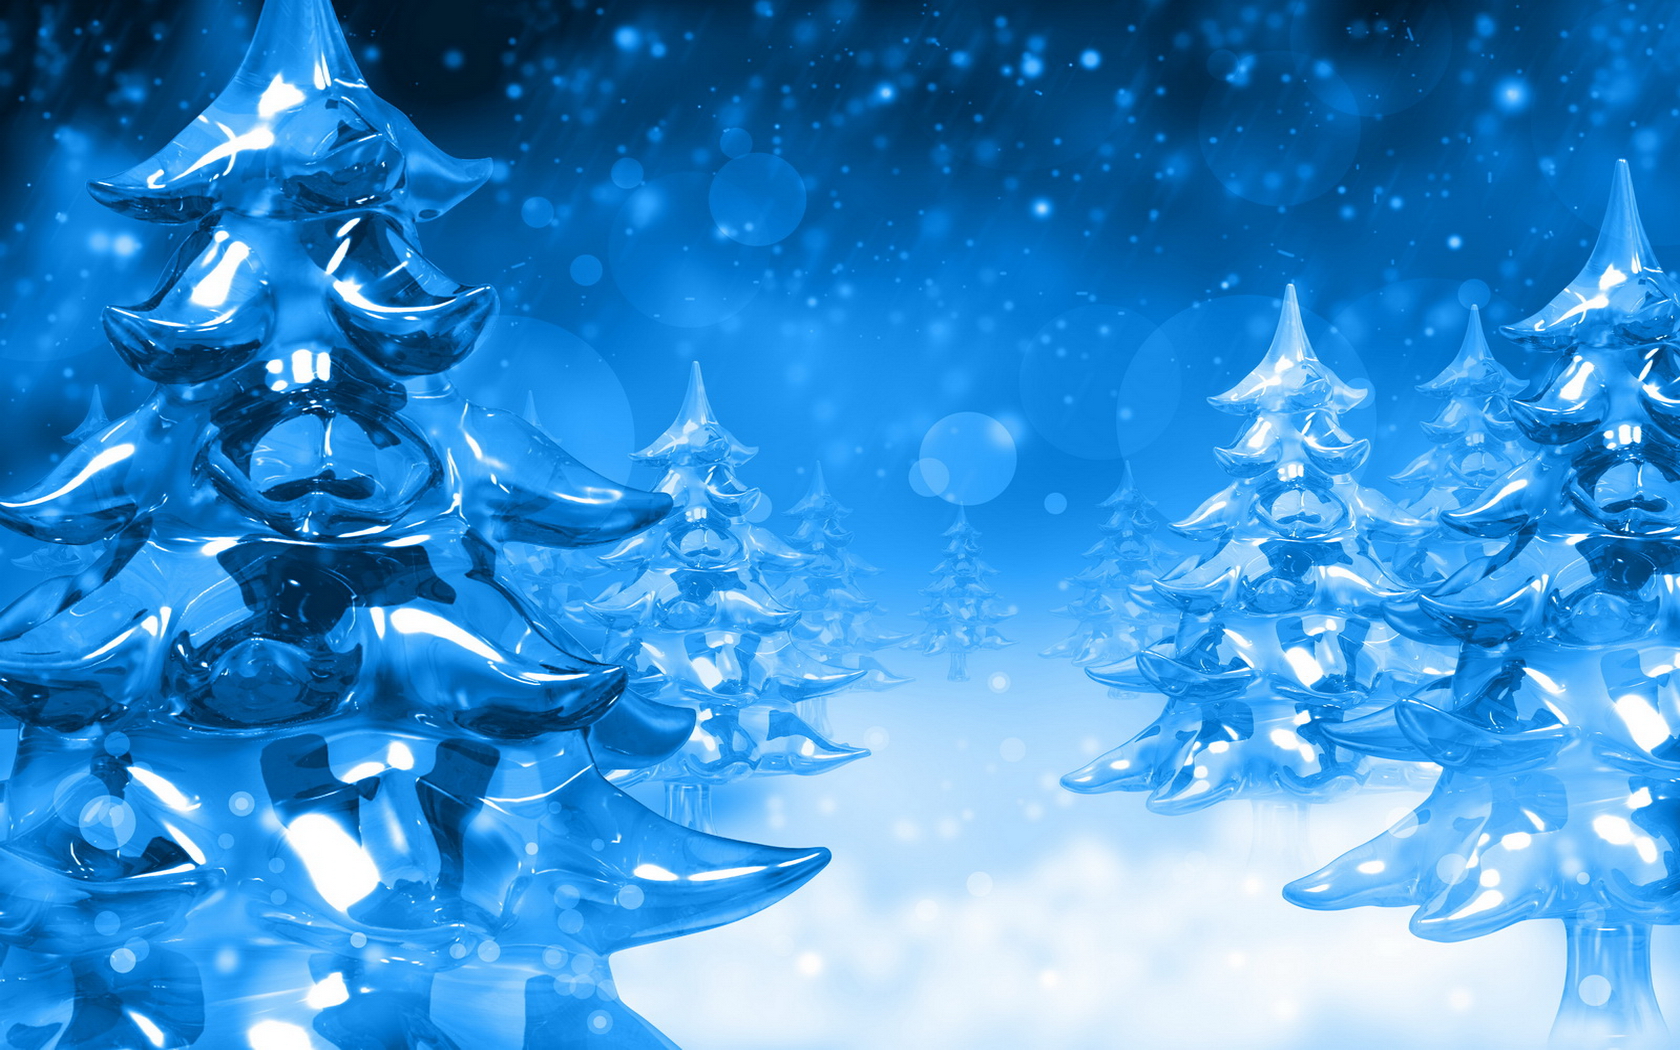 Christmas Screensavers New Calendar Template Site